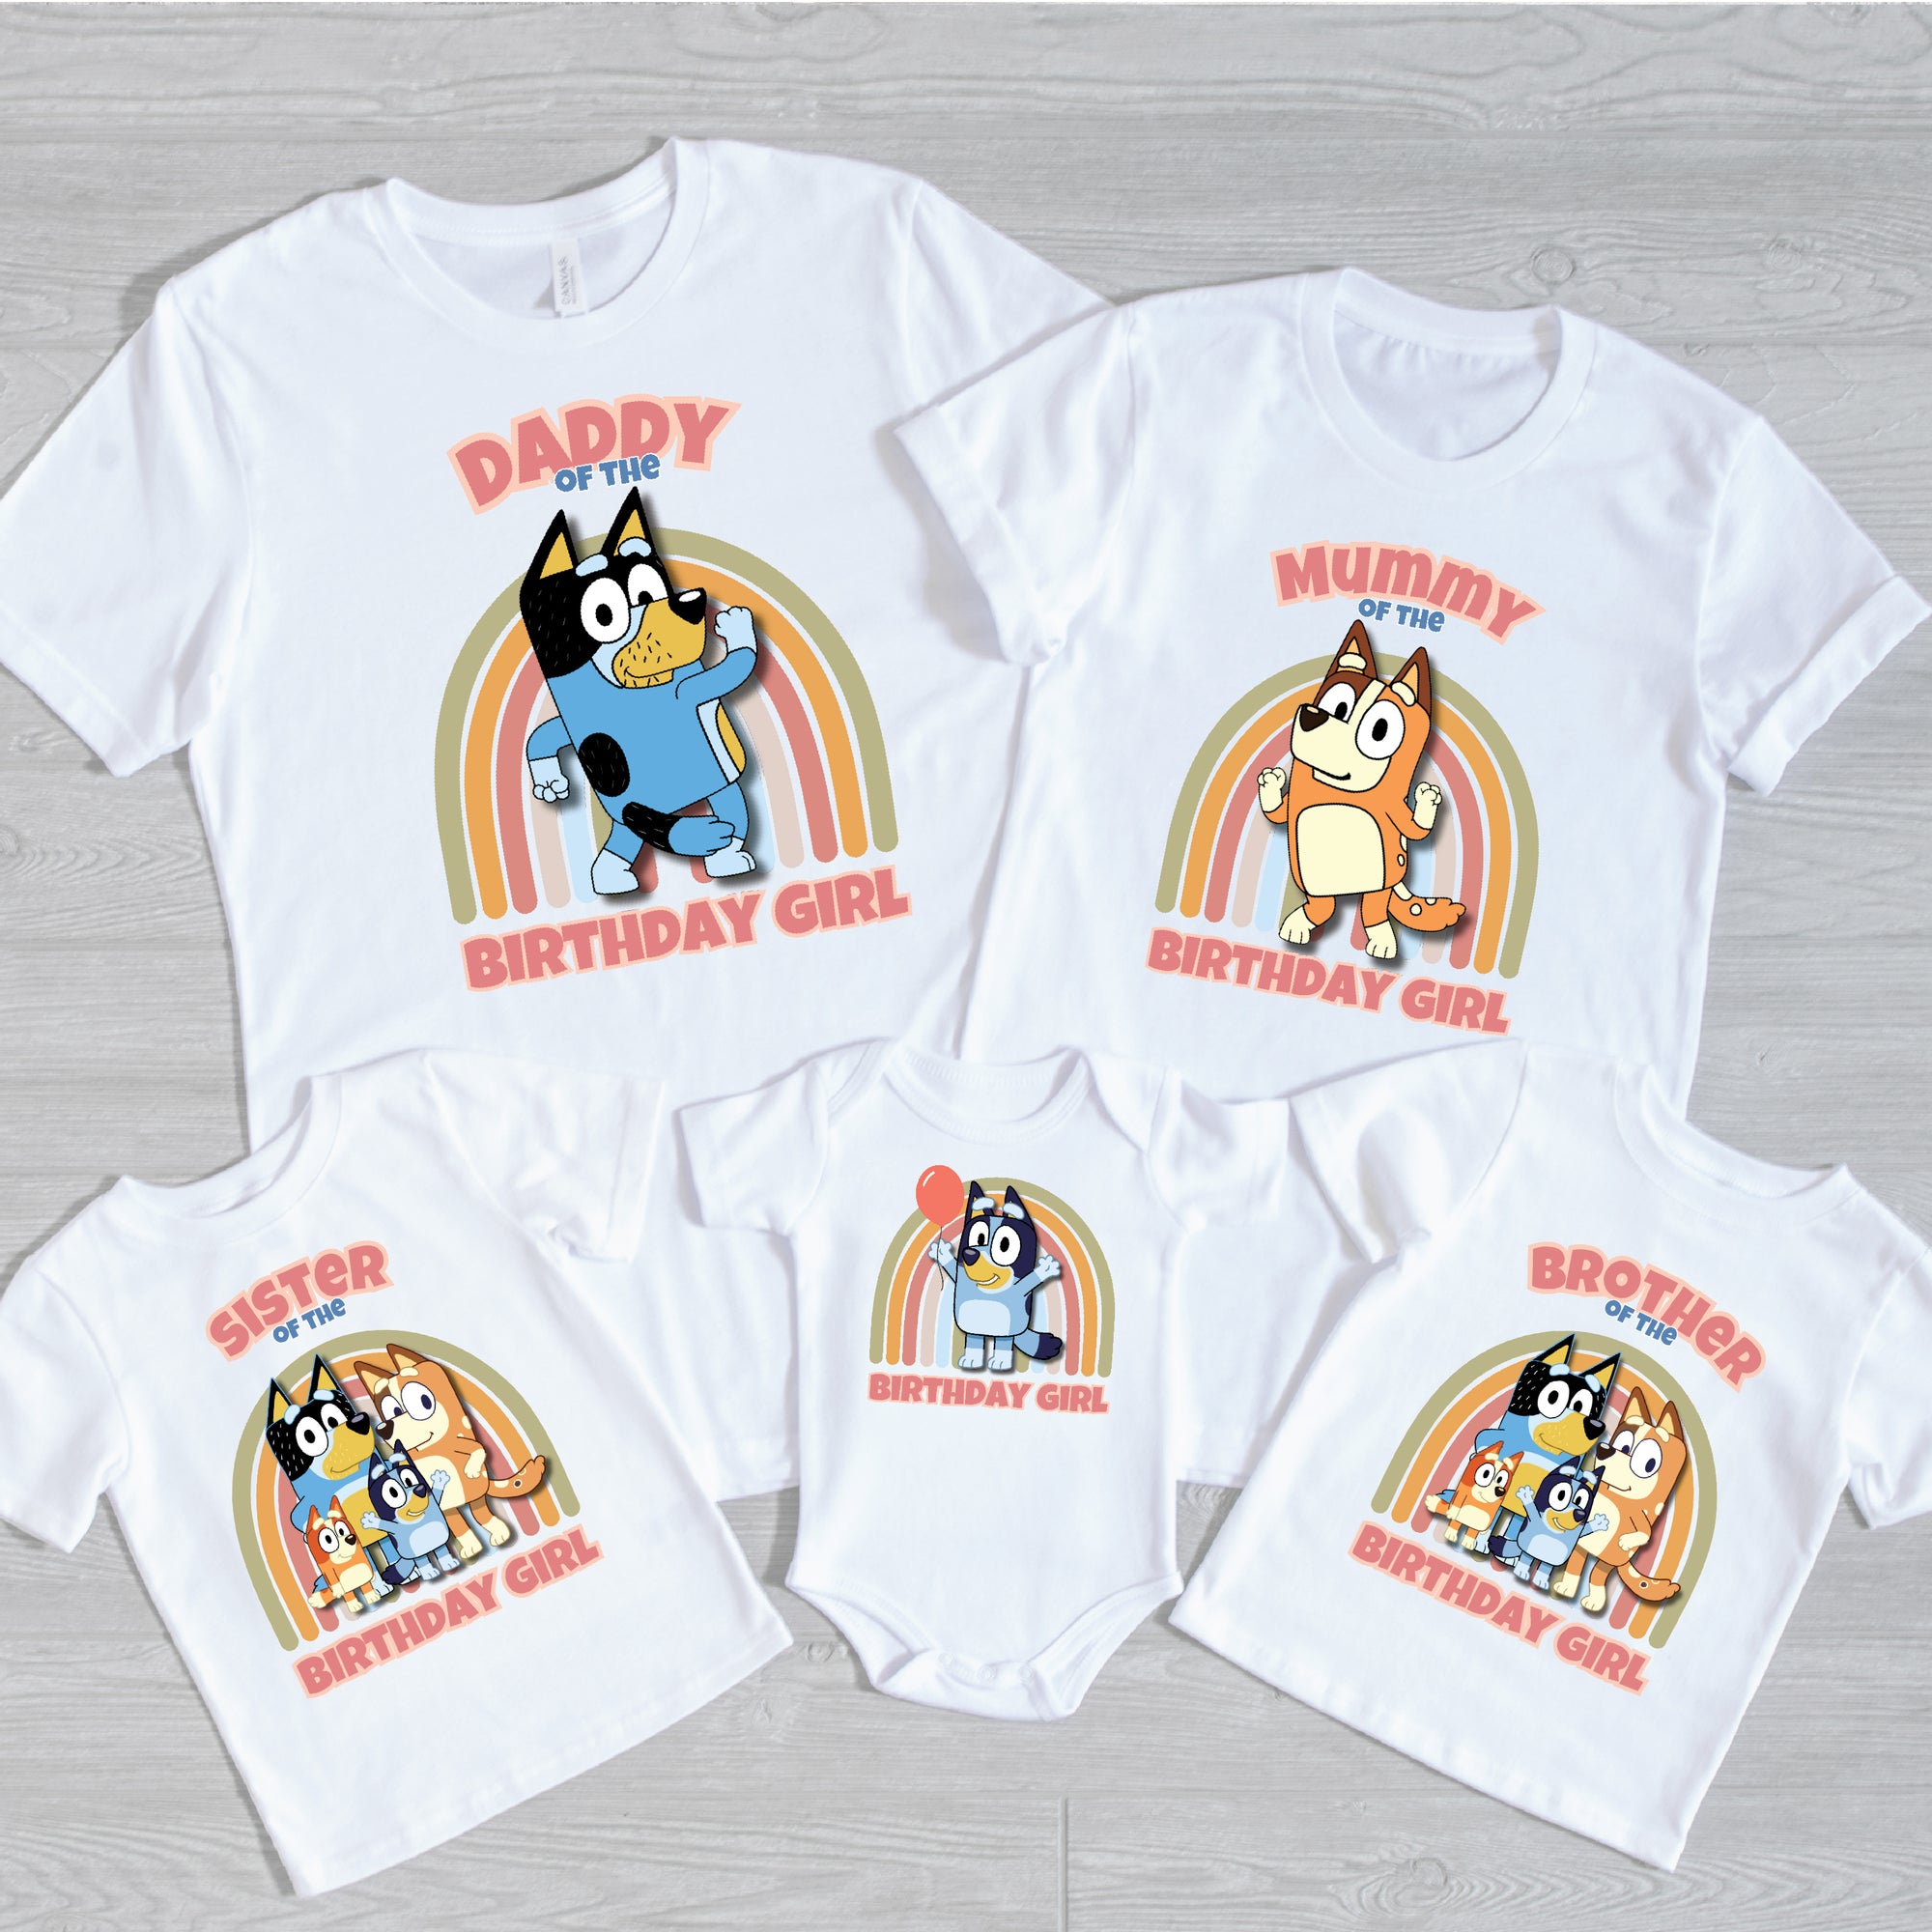 Bluey Family Birthday T-Shirts (Birthday Girl)